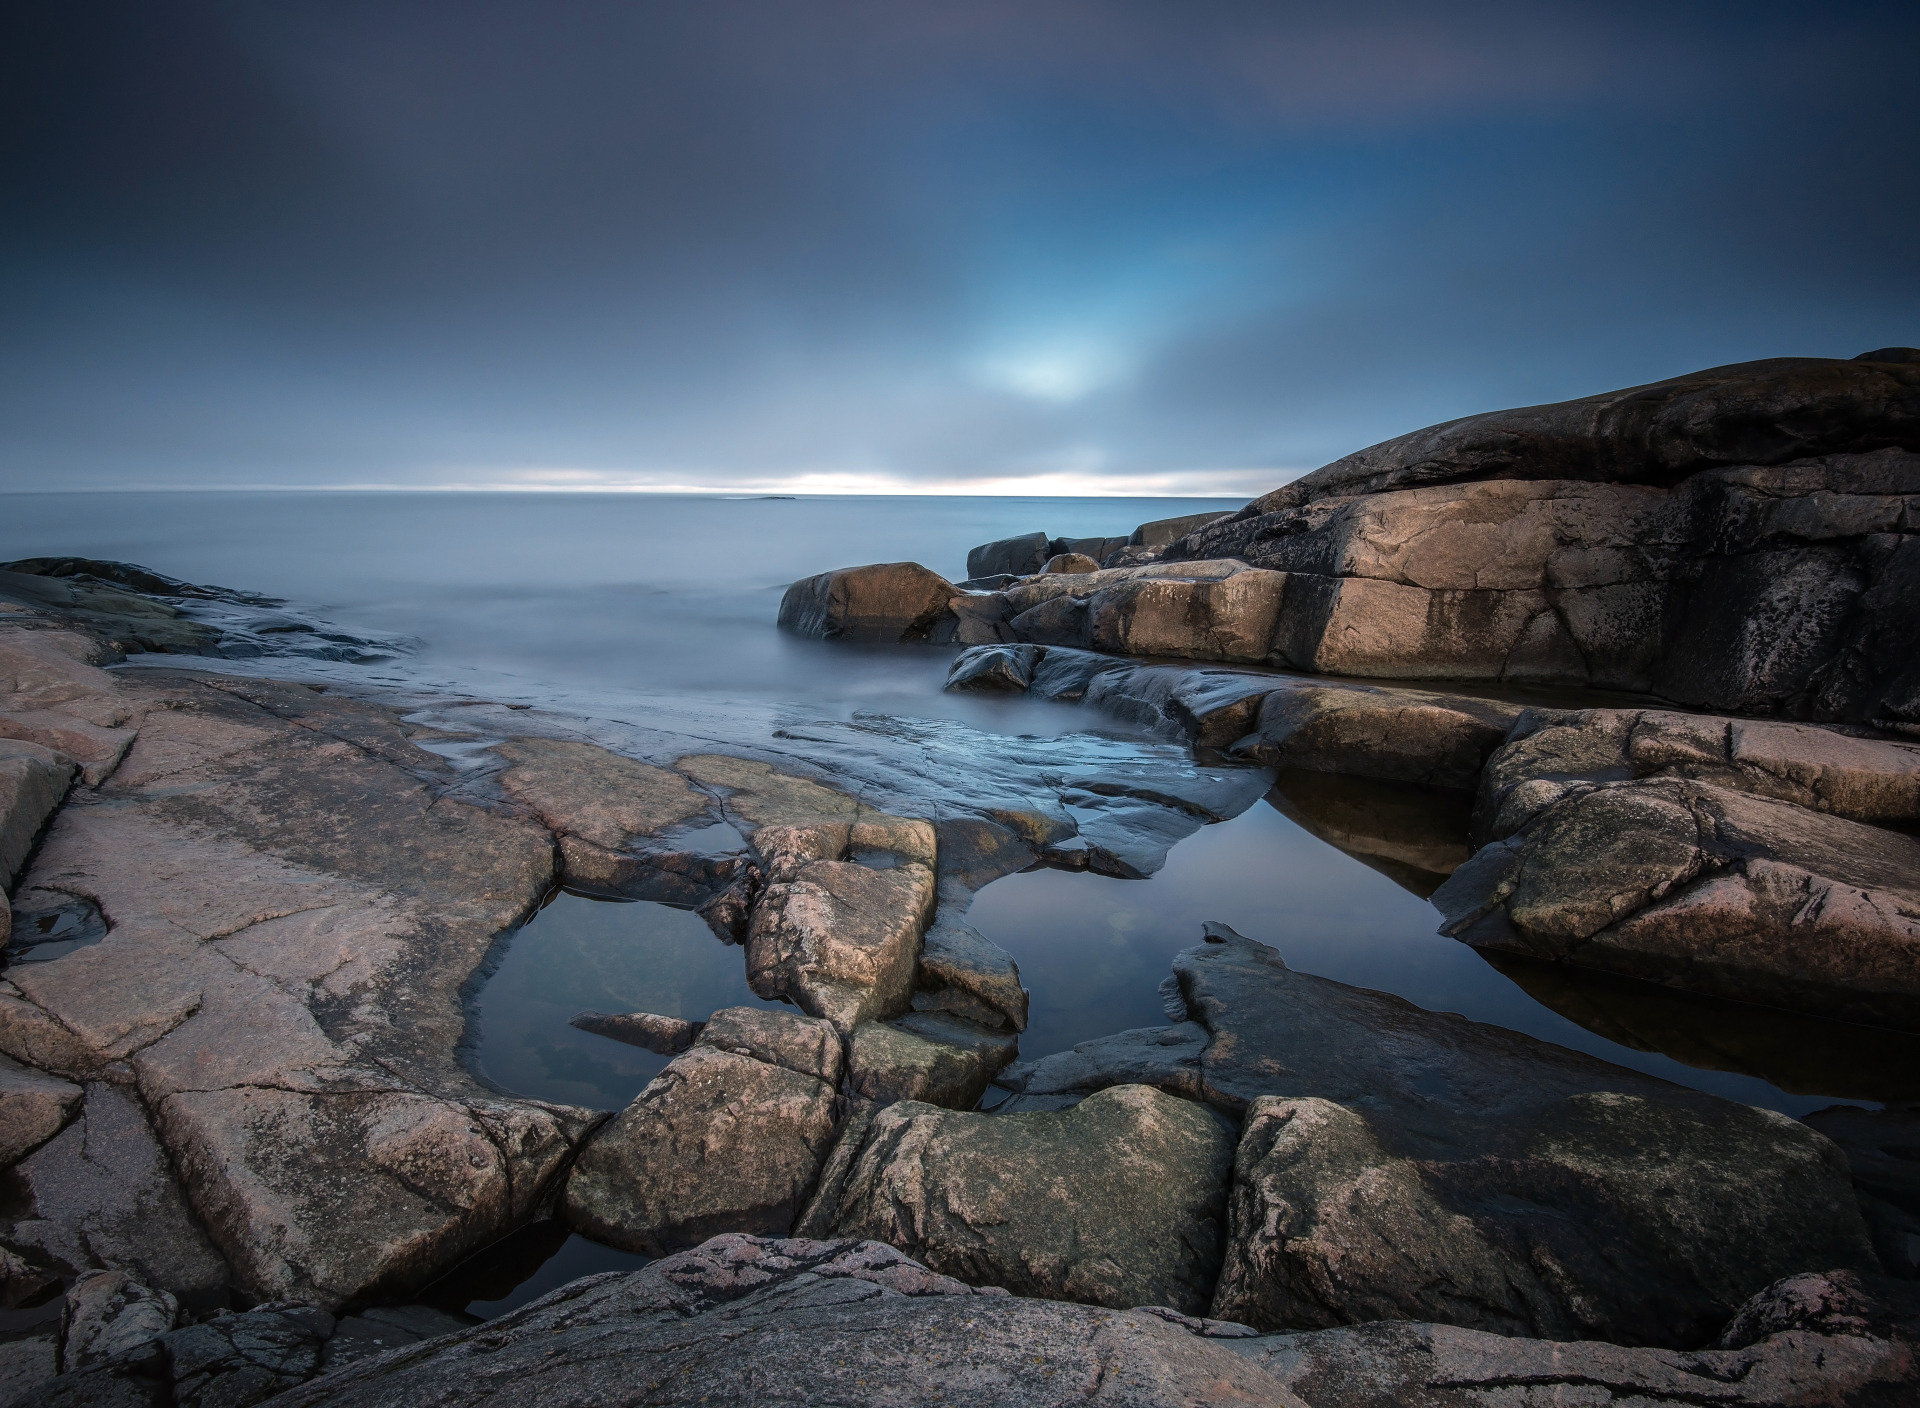 Каменистый берег моря. Скалистые камни в воде. Каменистый пейзаж. Камни на берегу.